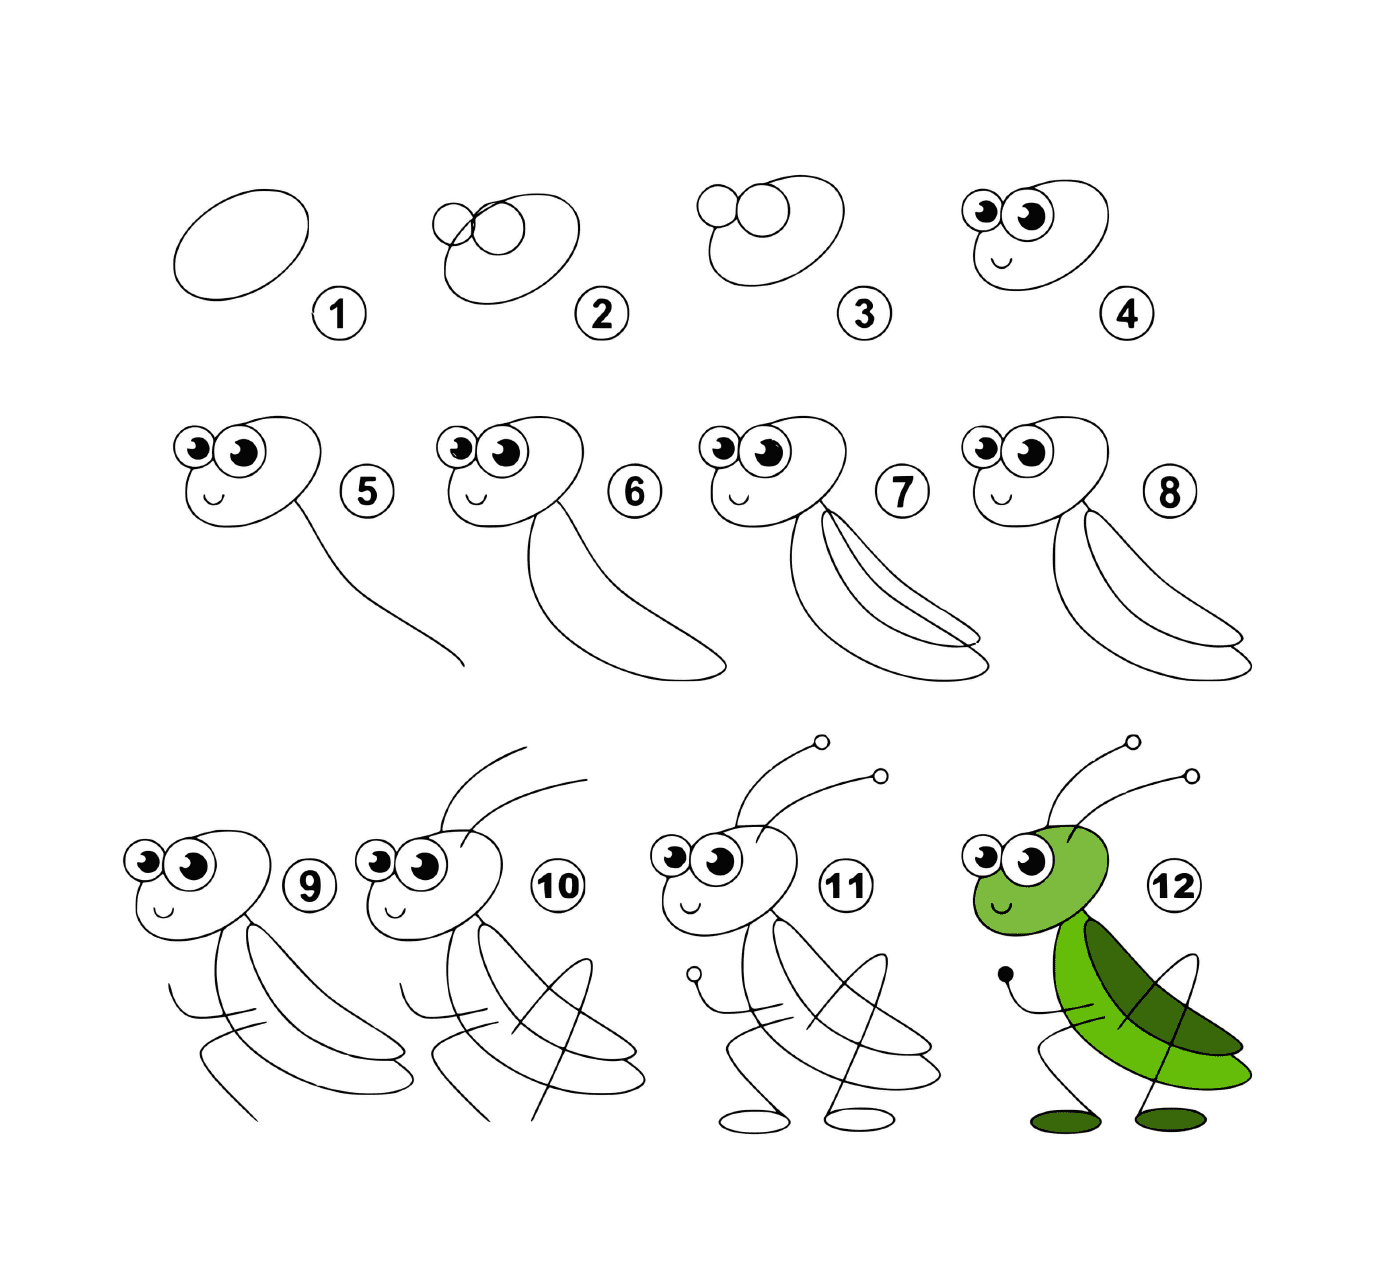  Como desenhar um gafanhoto facilmente 